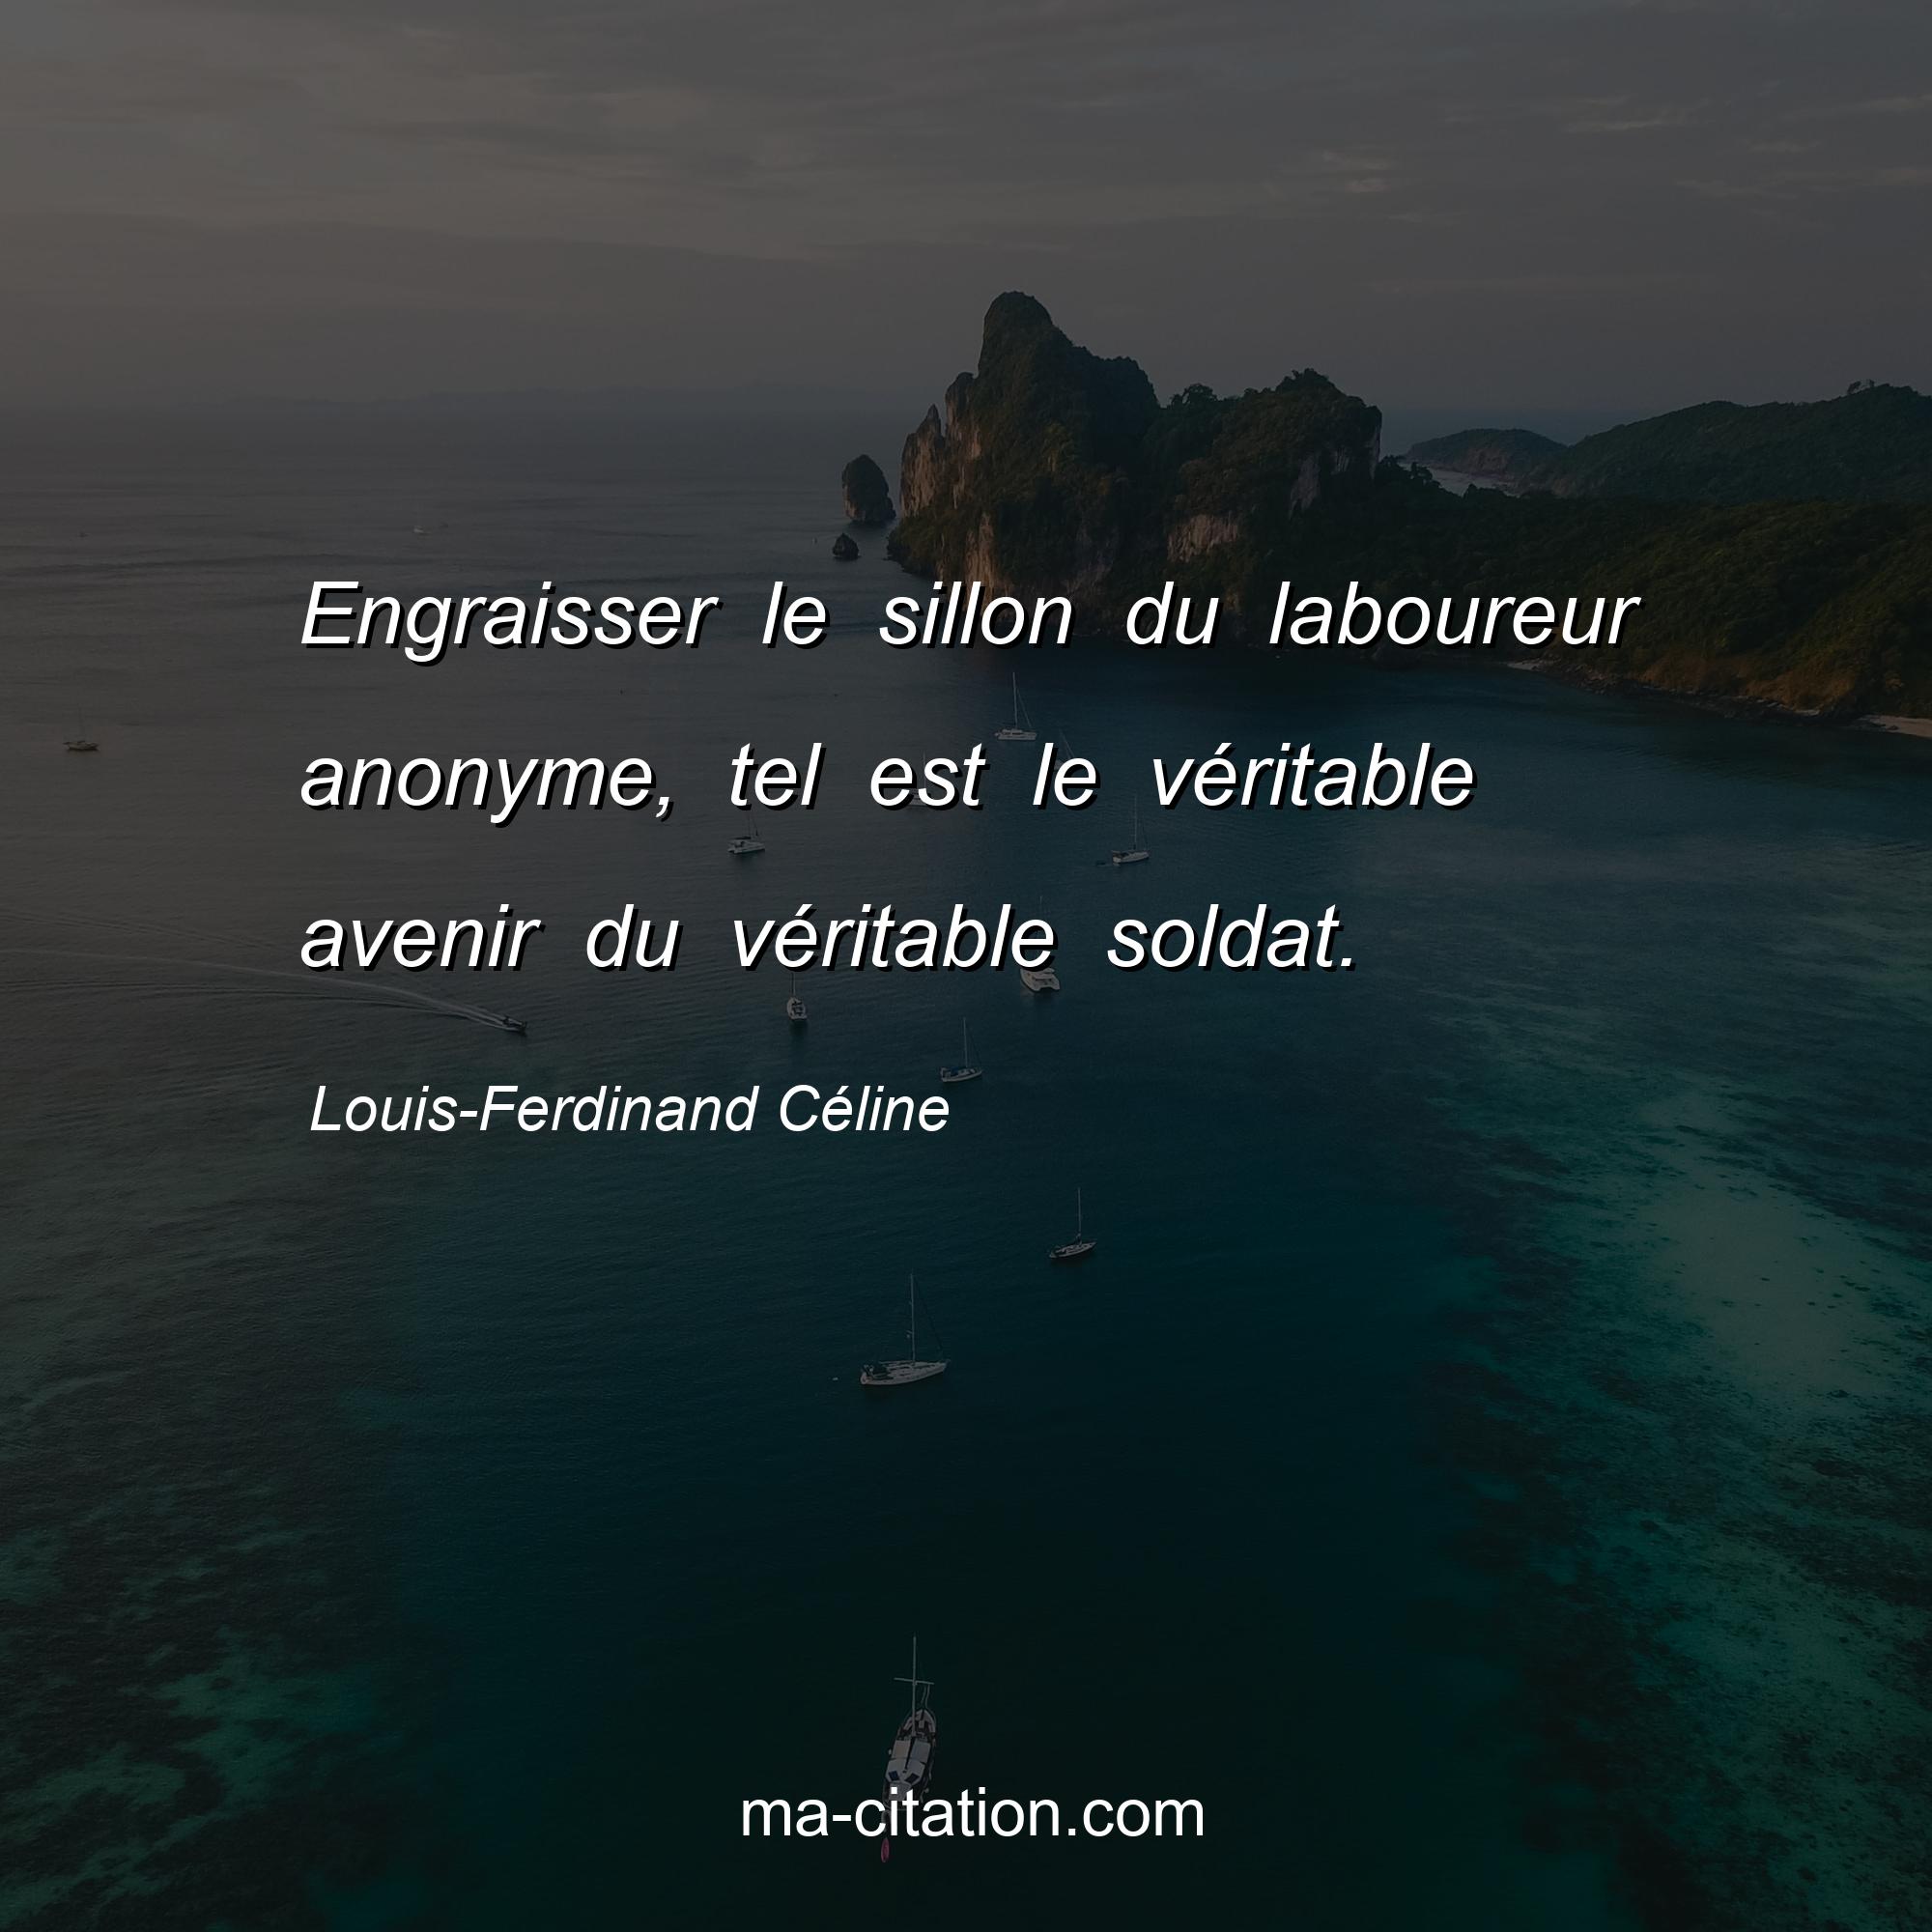 Louis-Ferdinand Céline : Engraisser le sillon du laboureur anonyme, tel est le véritable avenir du véritable soldat.